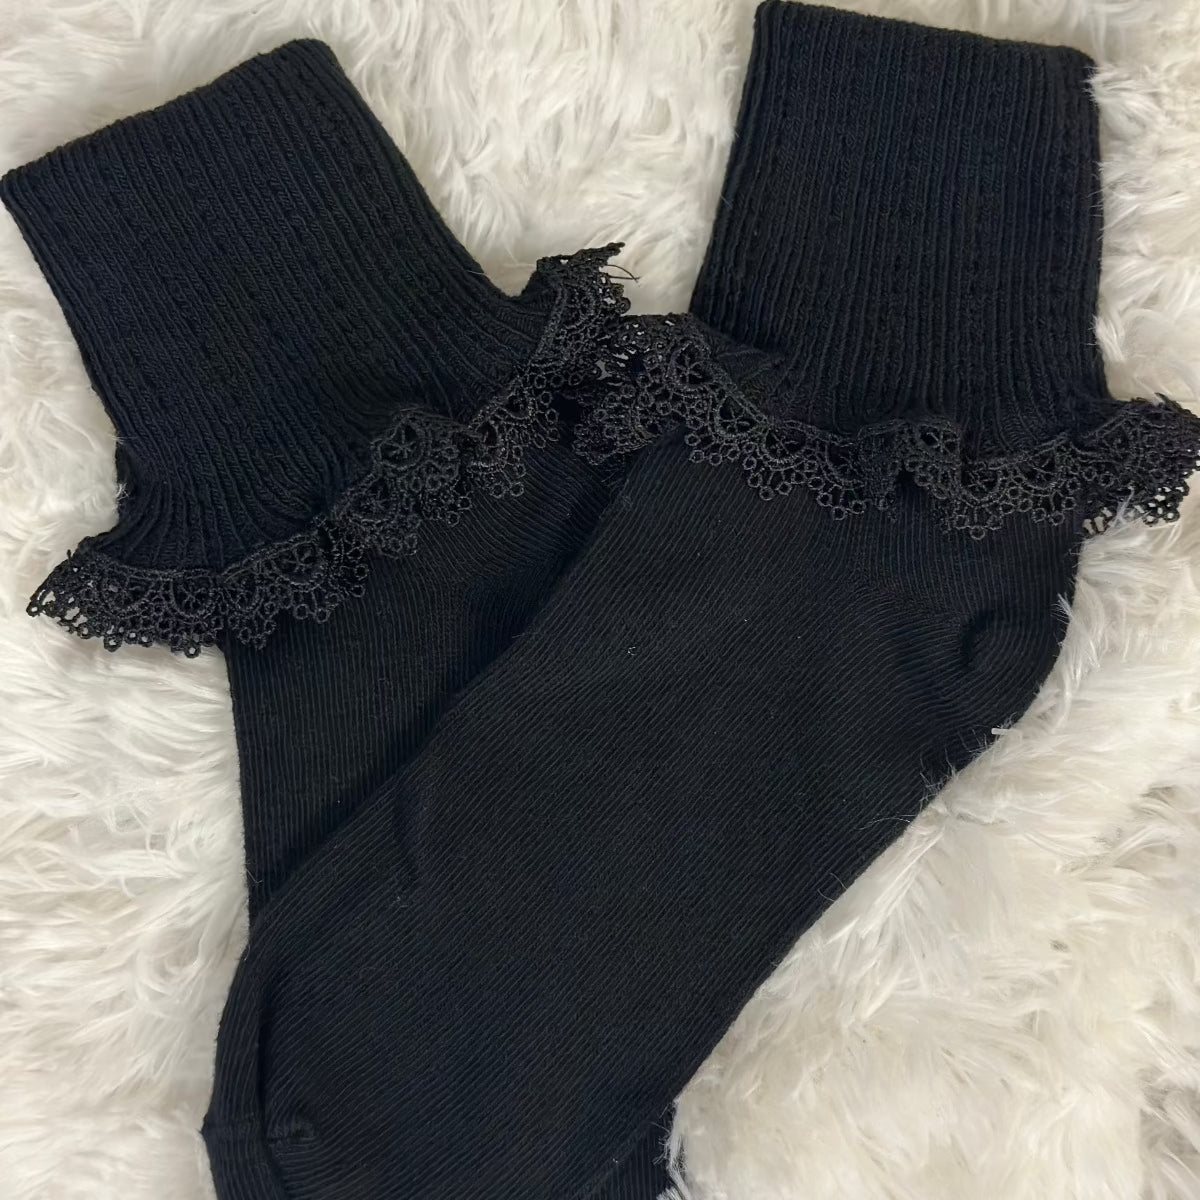 black lace cuff sock, bobby socks women, lace socks with heels women’s best quality, lace ruffle socks women’s, shark tank